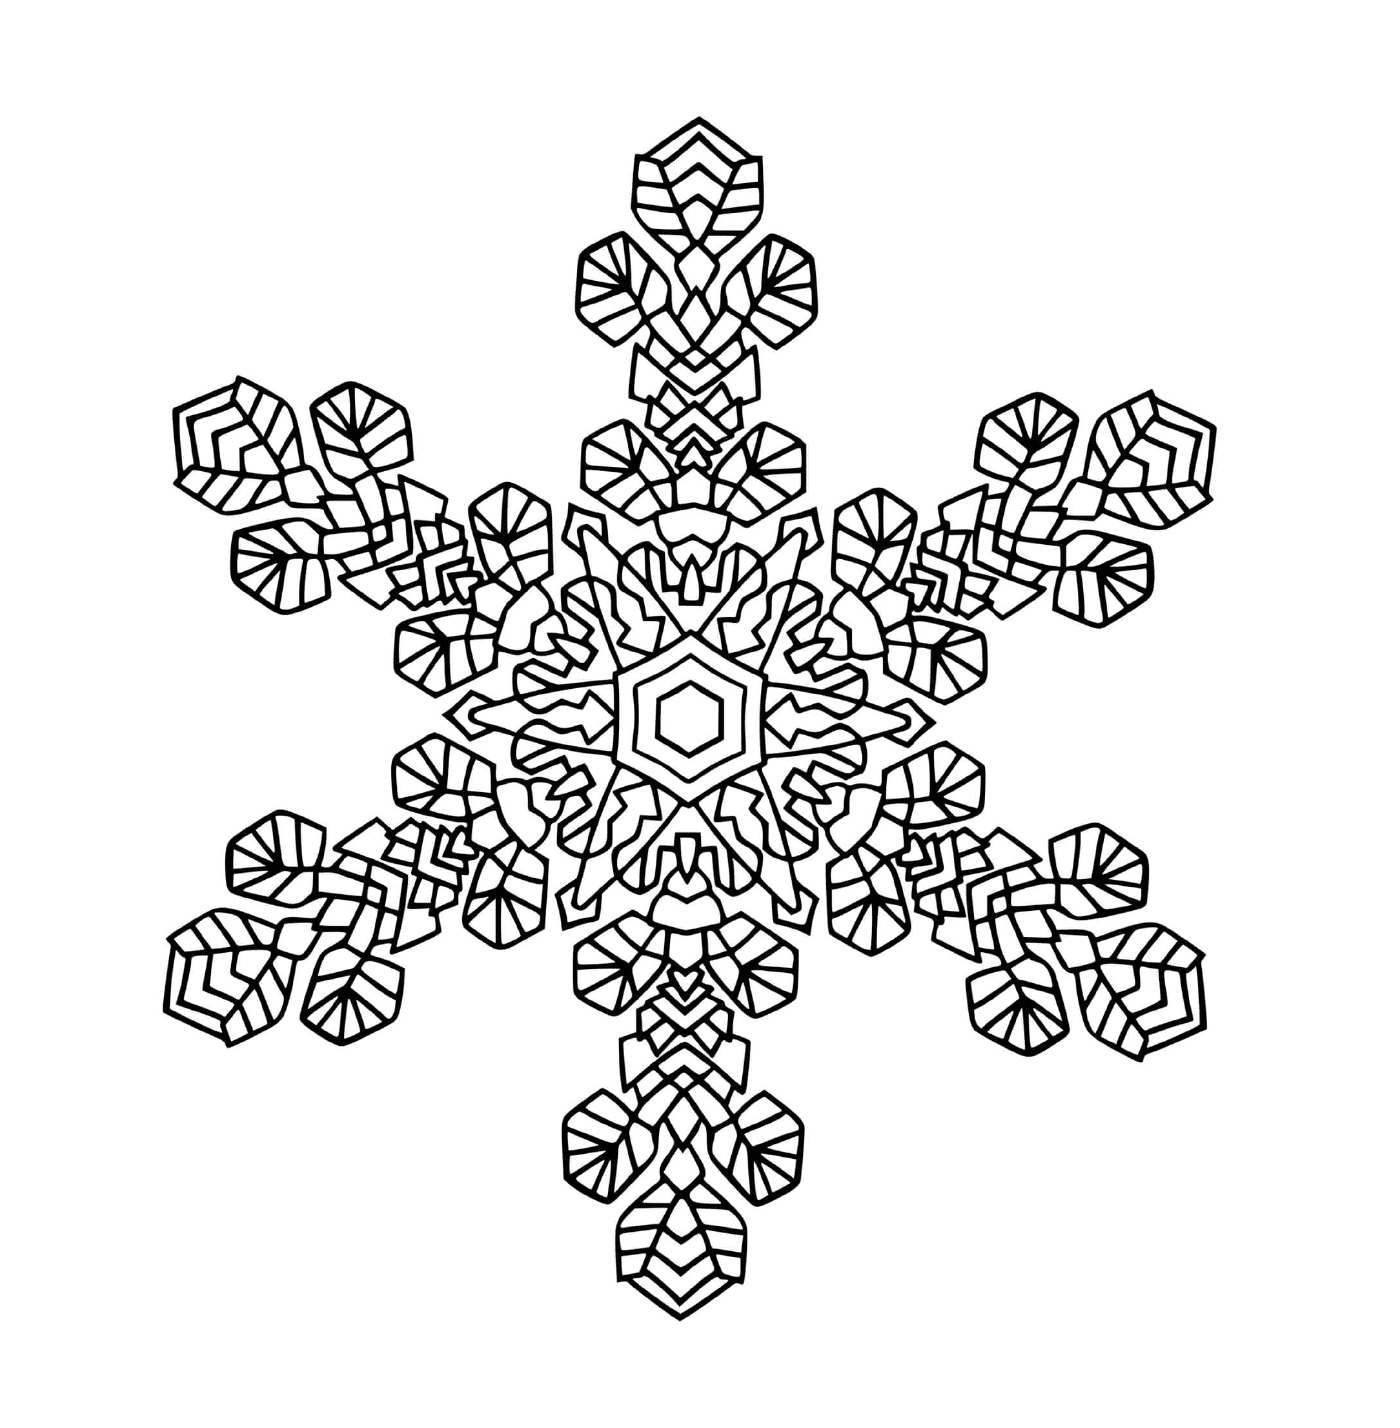  Un bel fiocco di neve in mandala 